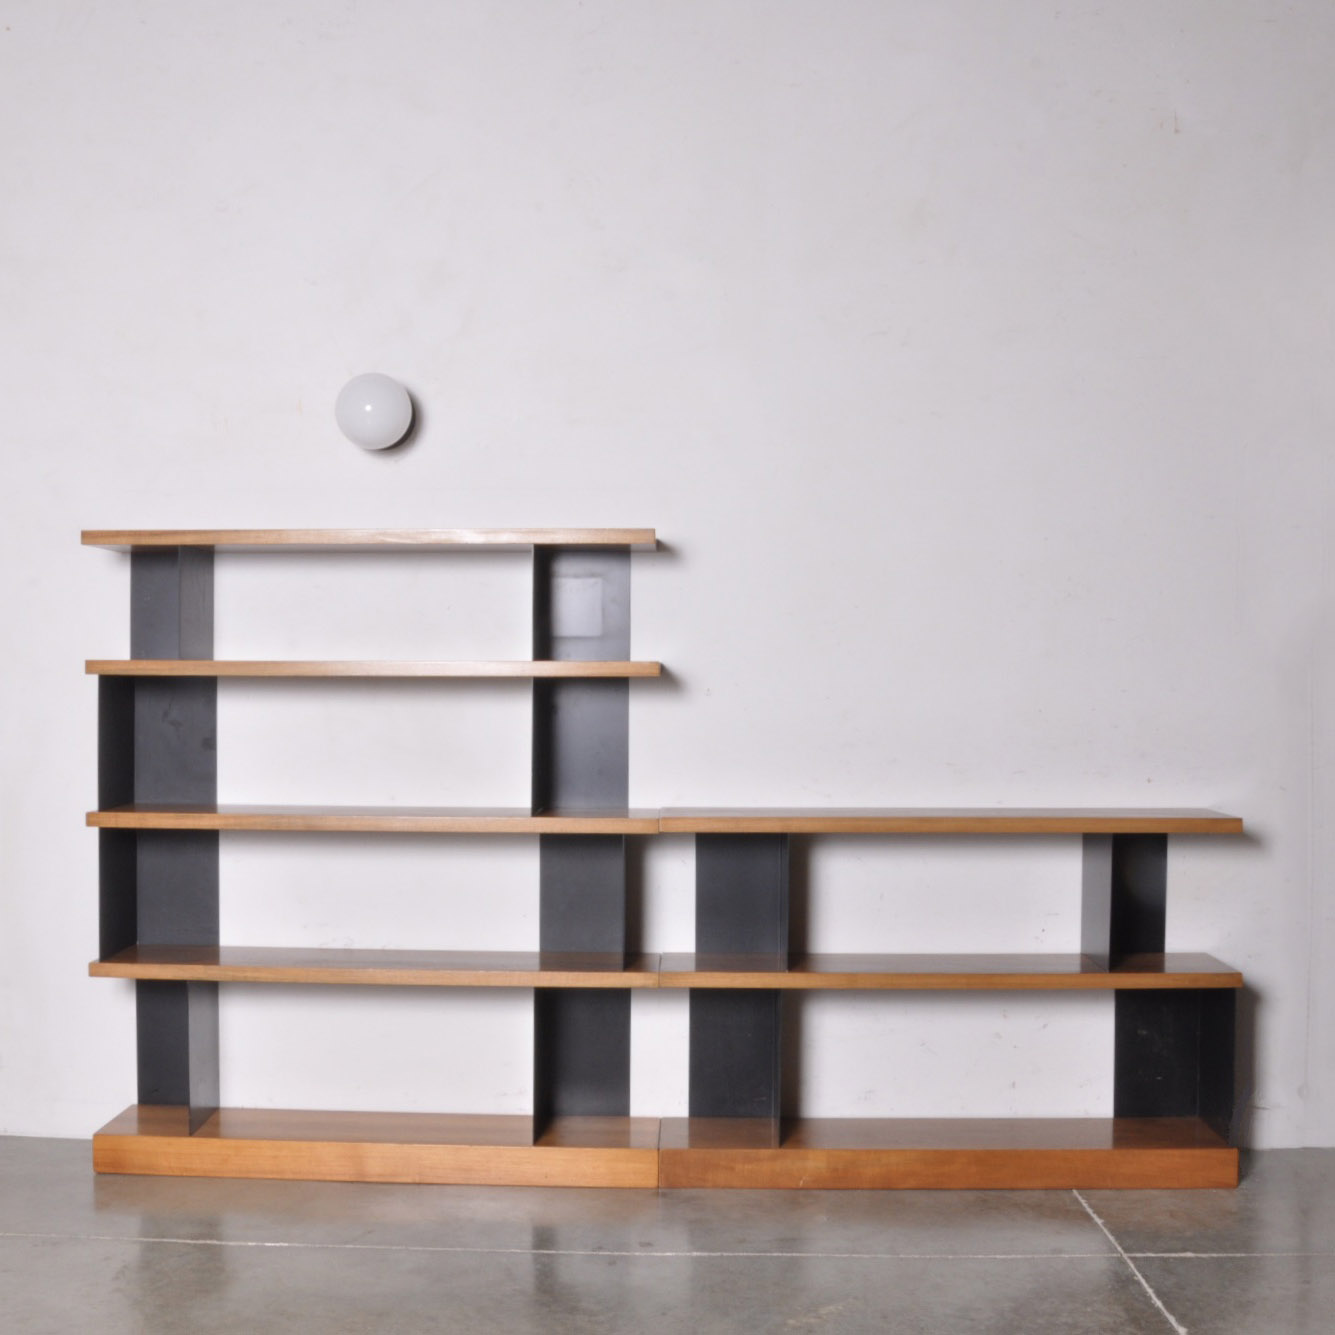 Modular Shelf Unit from Vogel & Nauer Architects, Zurich Switzerland Image